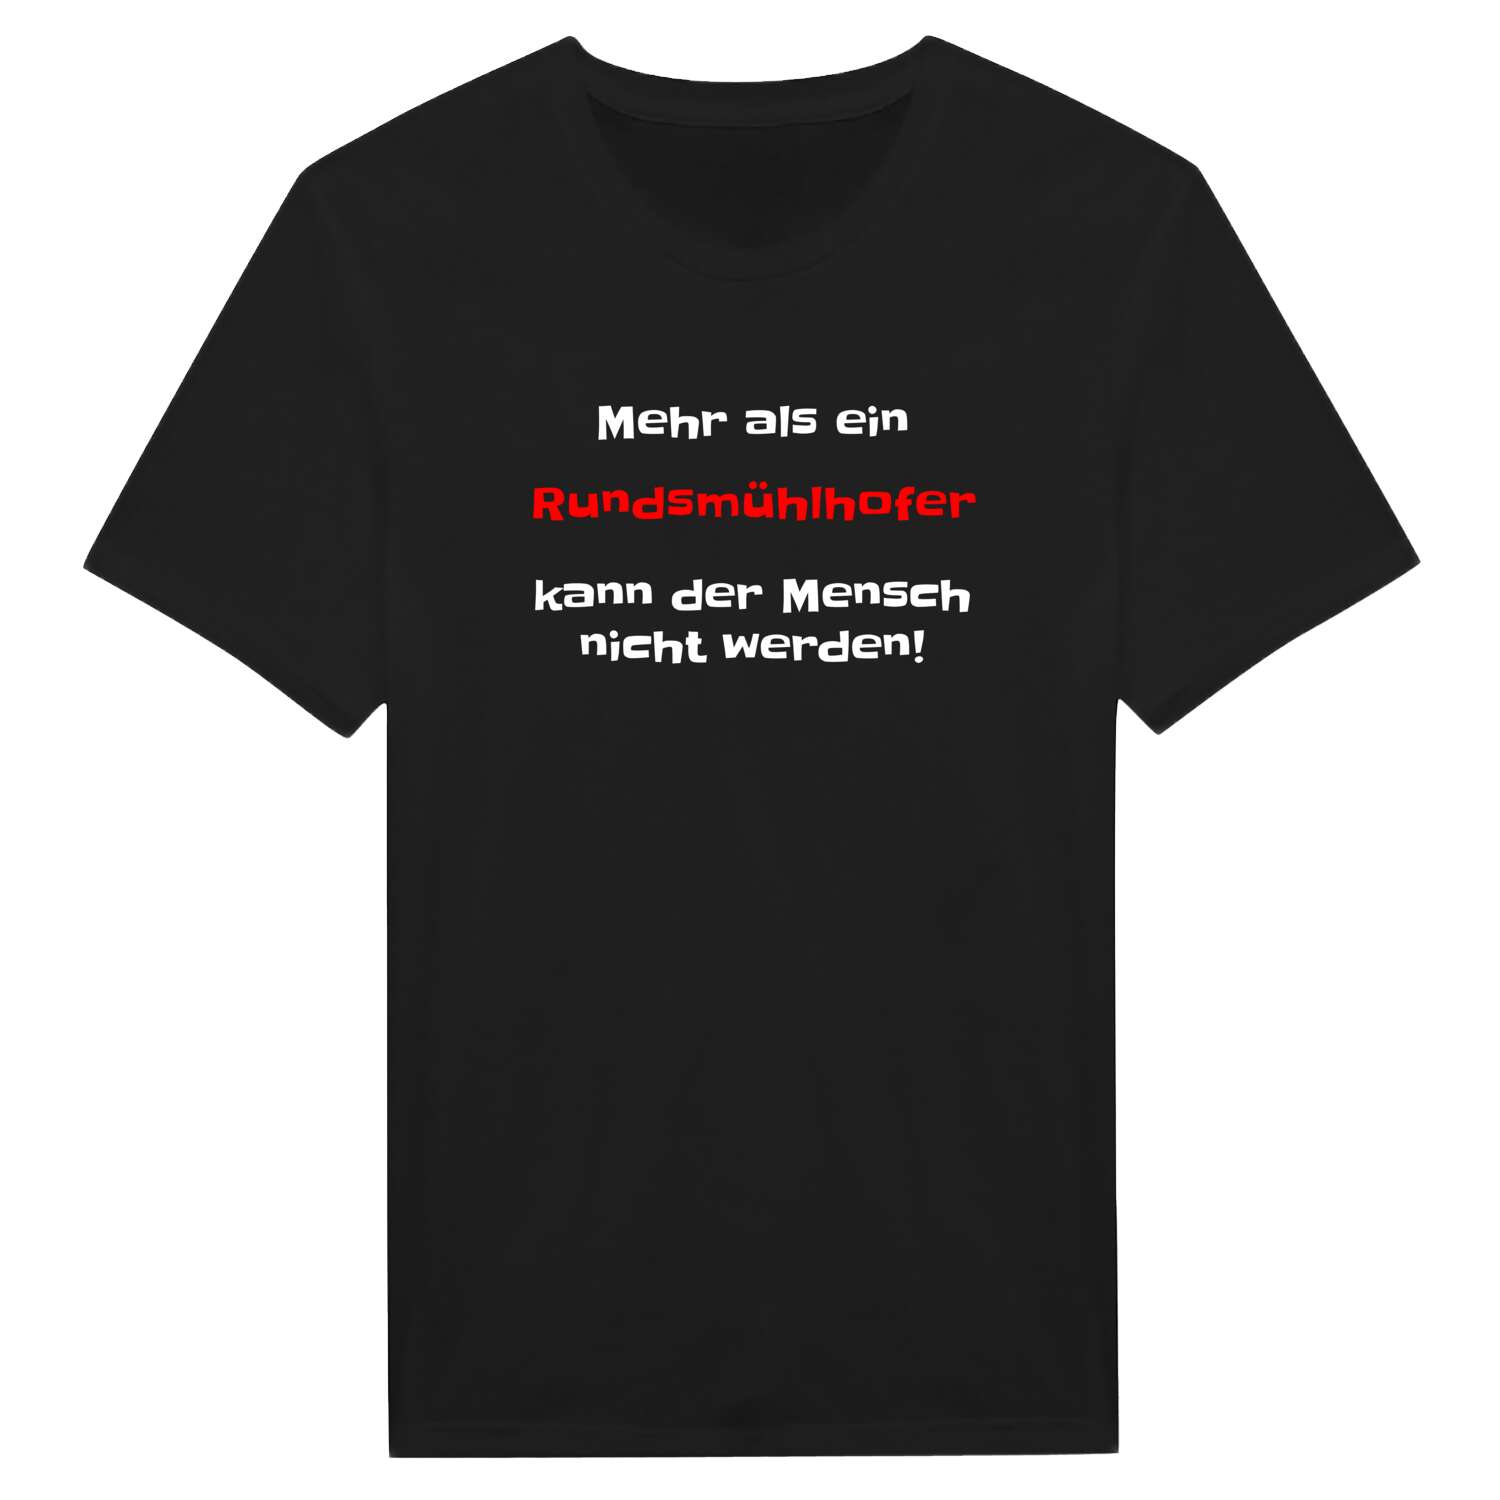 Rundsmühlhof T-Shirt »Mehr als ein«